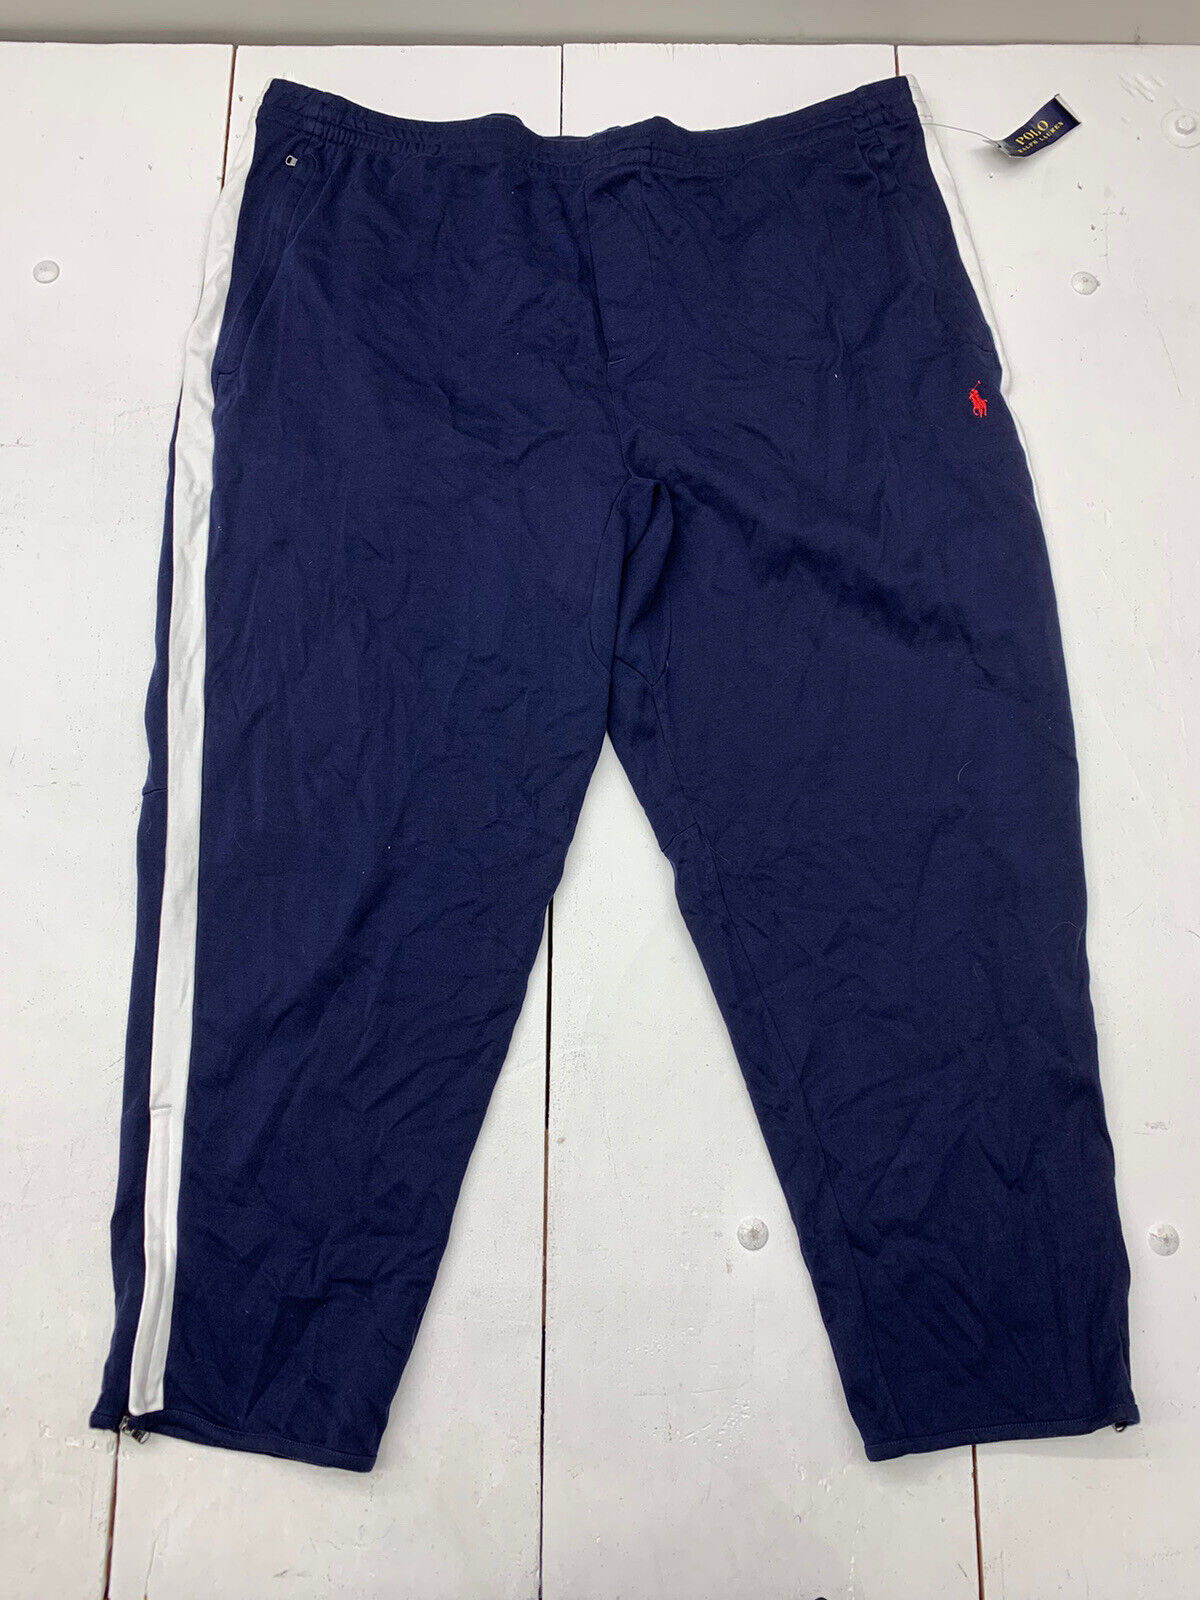 Polo Ralph Lauren Mens Blue Sweatpants Size 4XB